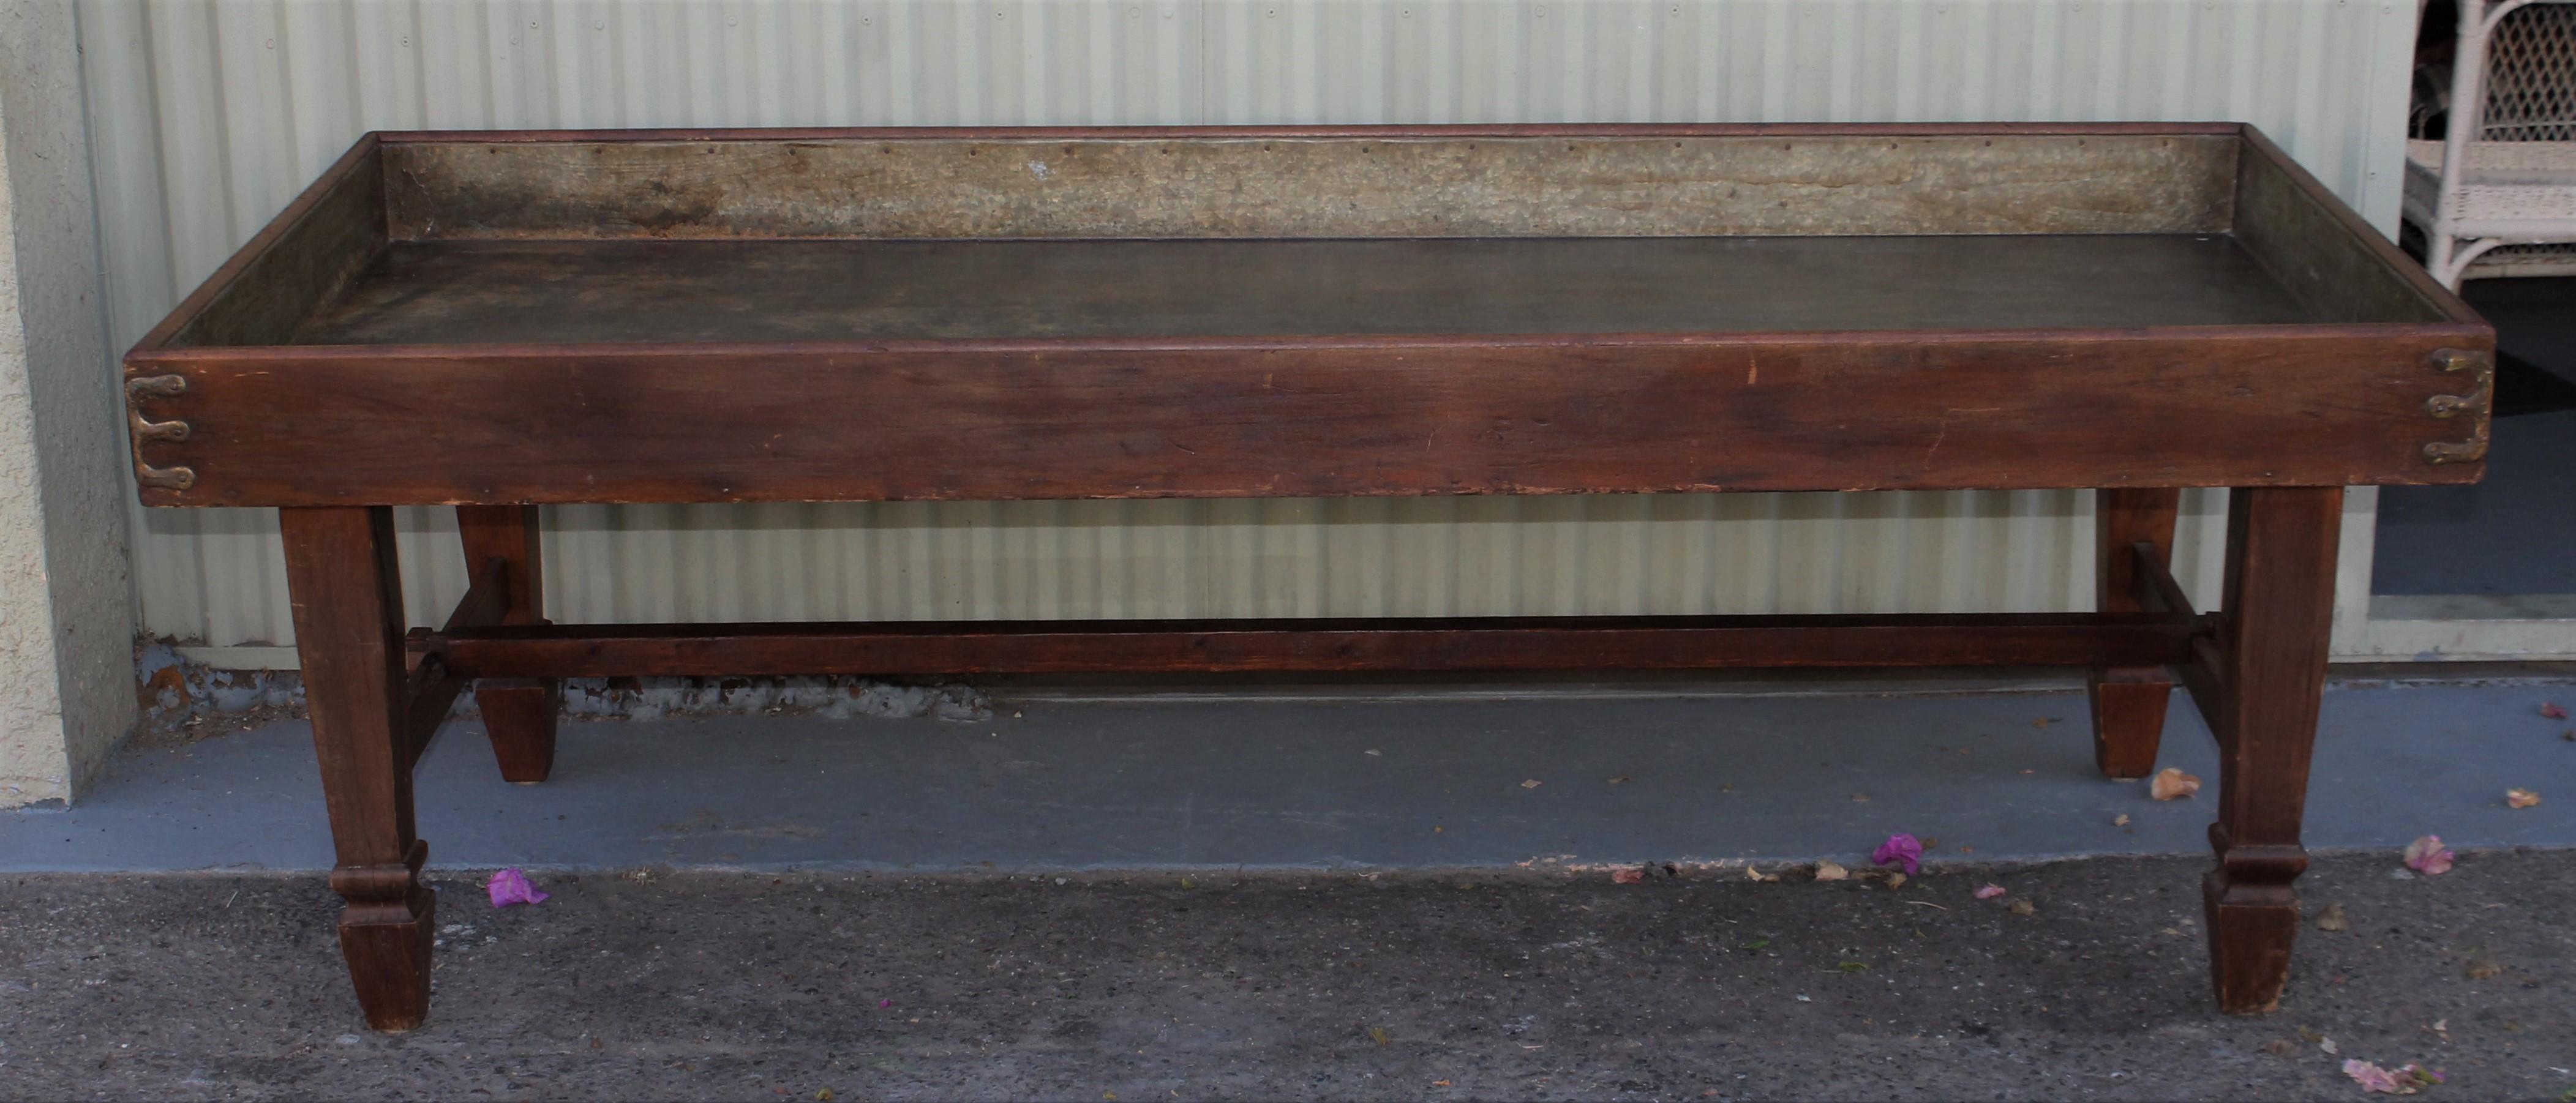 Dieser Sortiertisch aus Kiefernholz aus dem 19. Jahrhundert hat eine alte Oberfläche und eine originale Blecheinlage. Früher wurden die Beine hochgeklappt, jetzt sind sie fest und stabil. Es hat alle Original-Beschläge und Scharniere unterhalb der